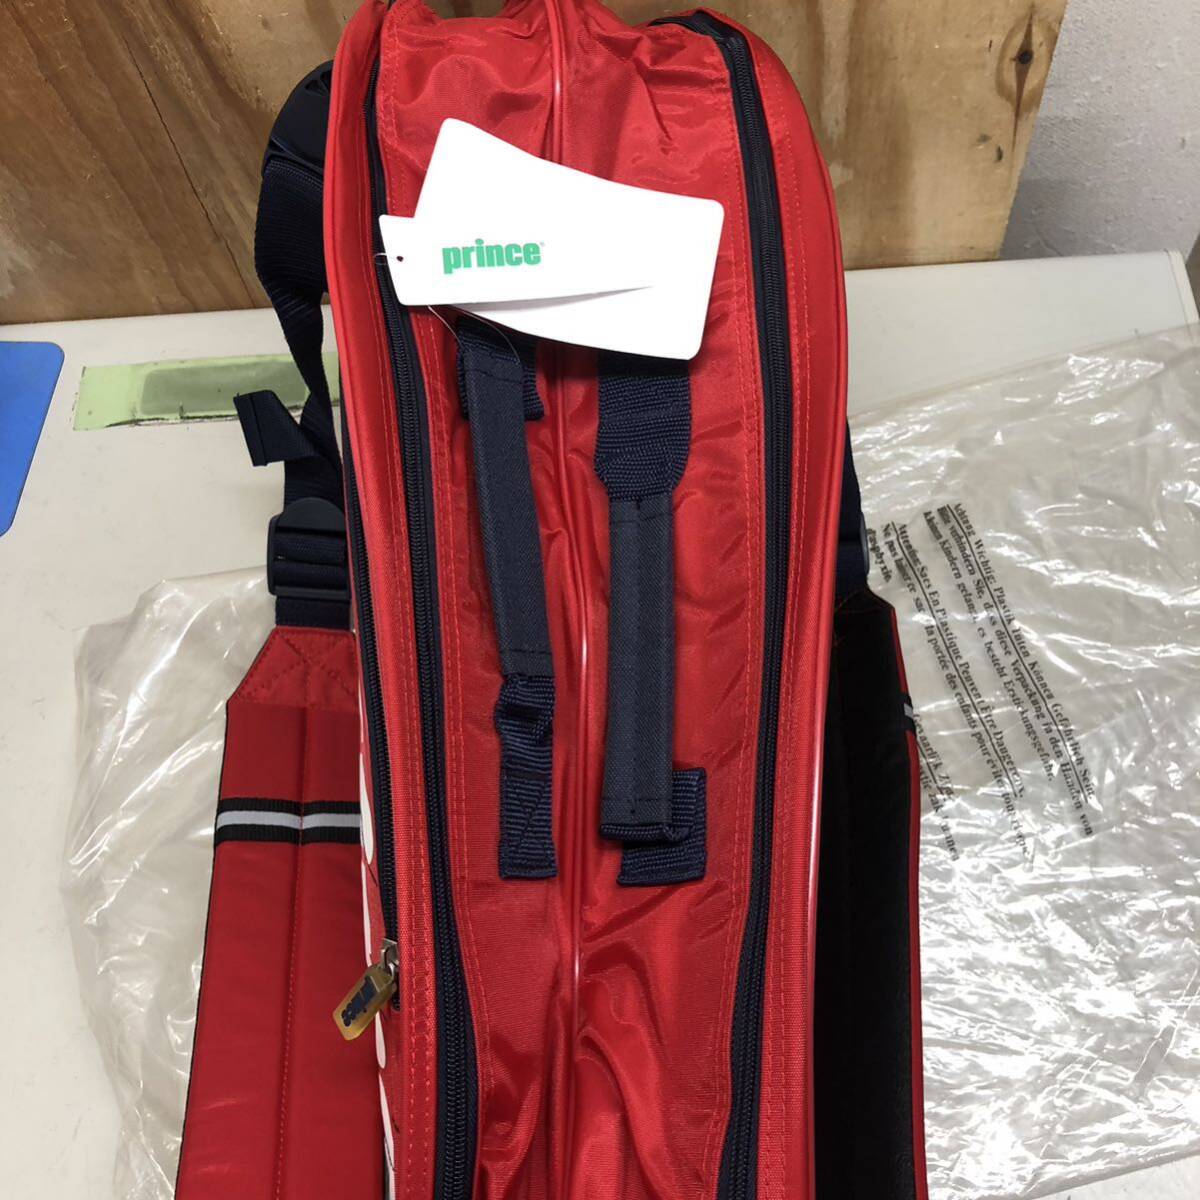 ③ Prince SP062 racket bag used unused long-term keeping goods tennis tennis bag racket 